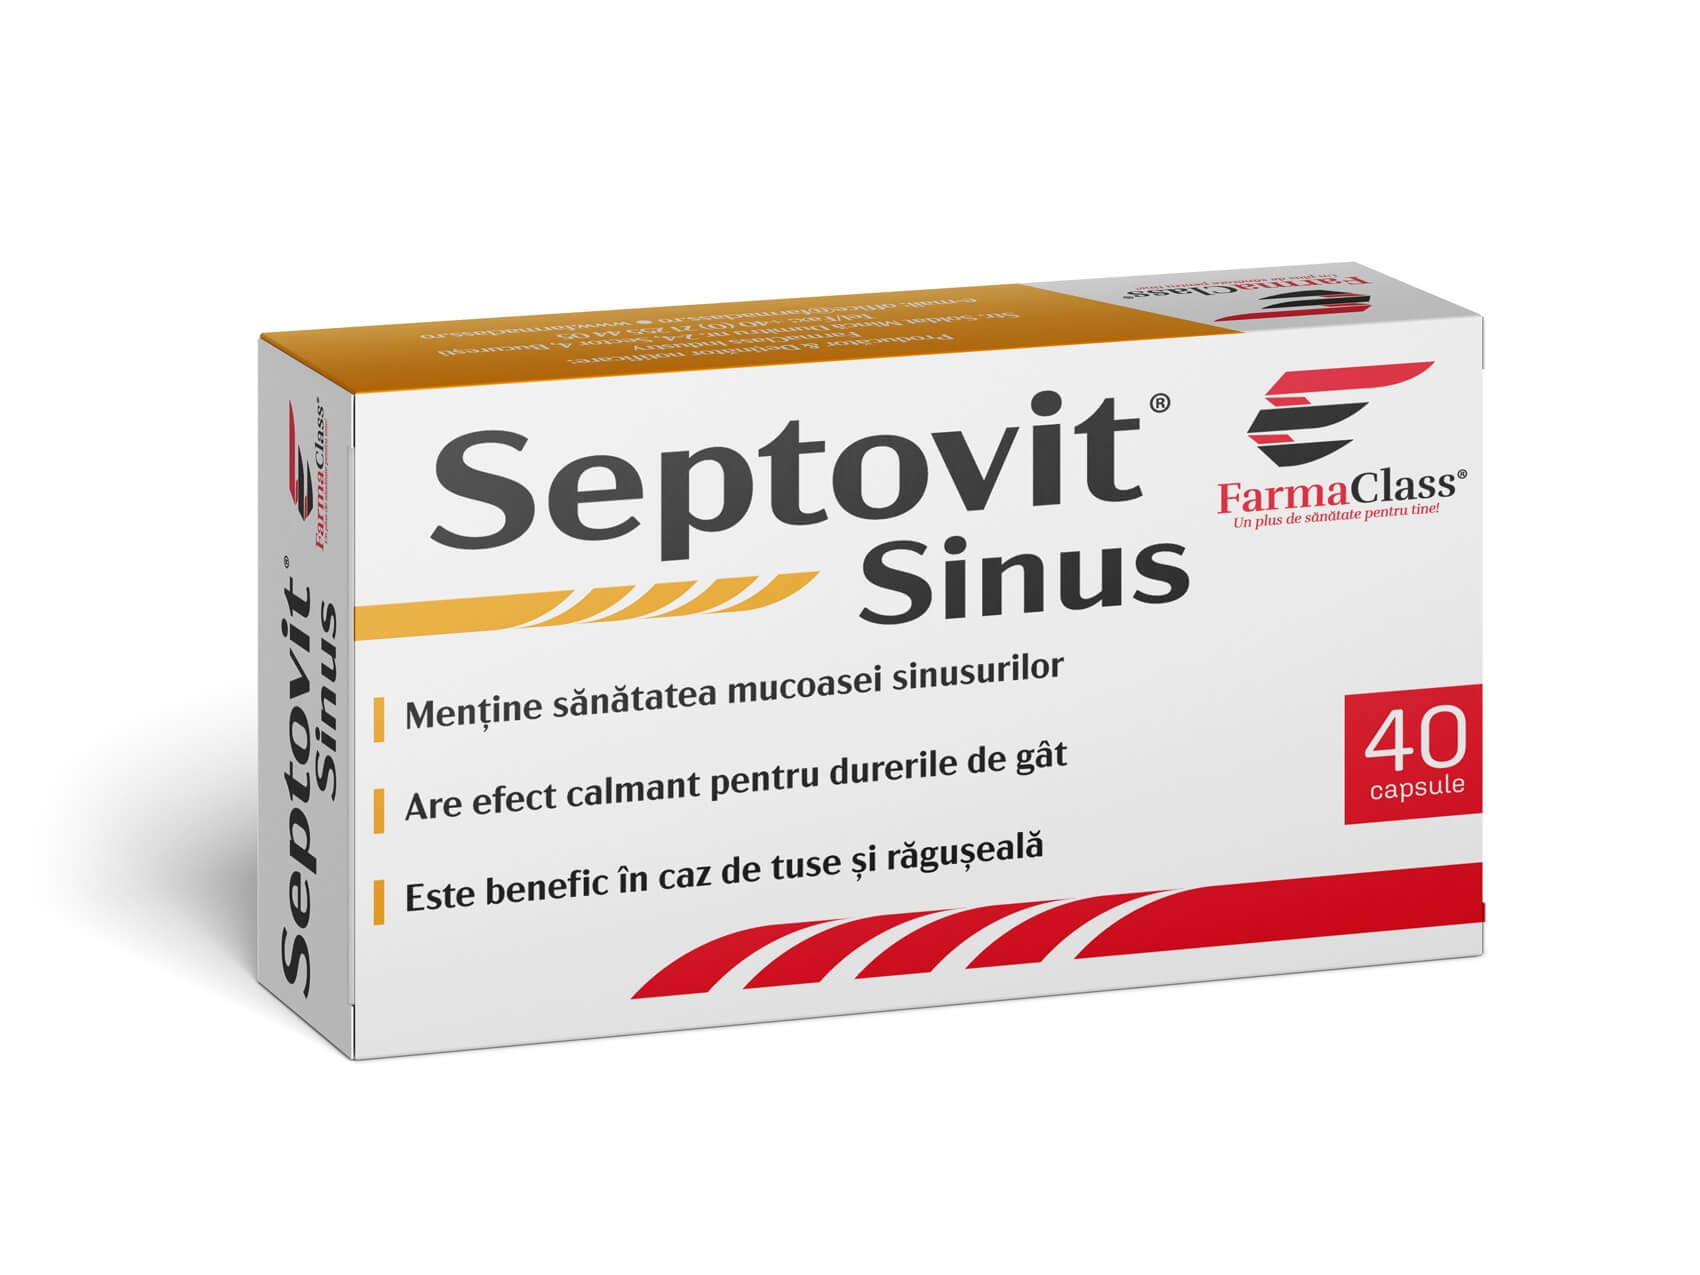 Septovit Sinus 40 cps, FarmaClass